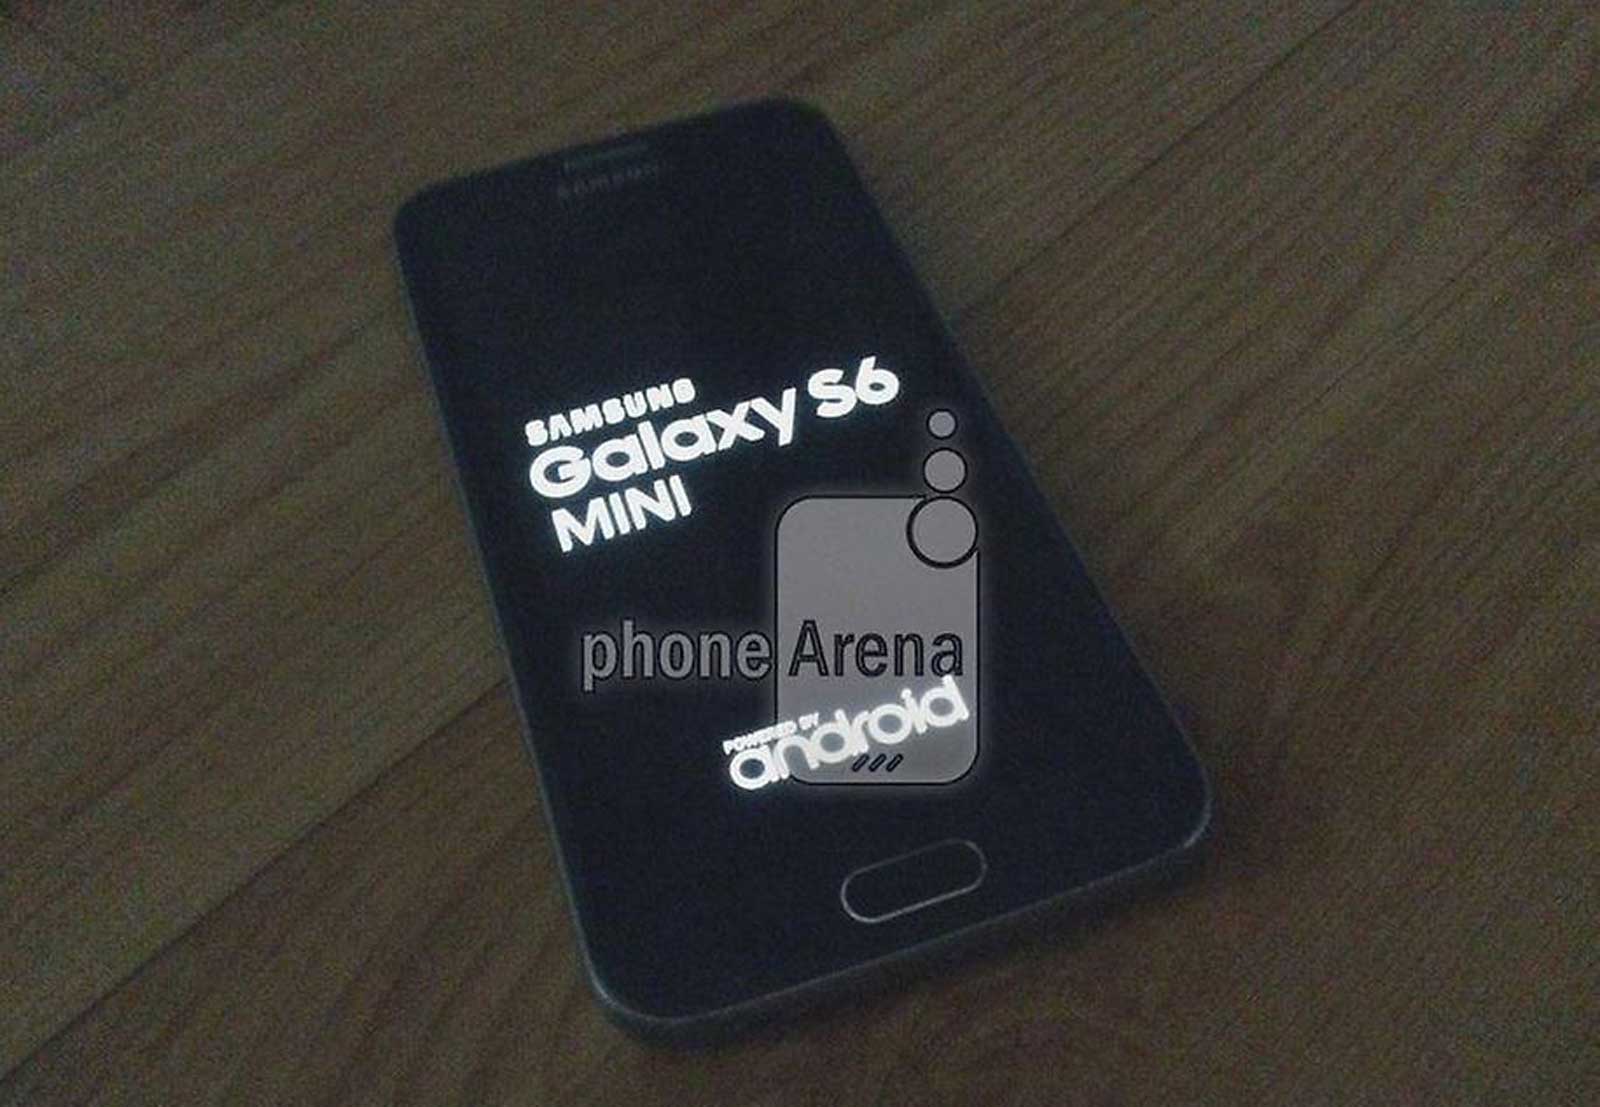 Galaxy S6 mini leak